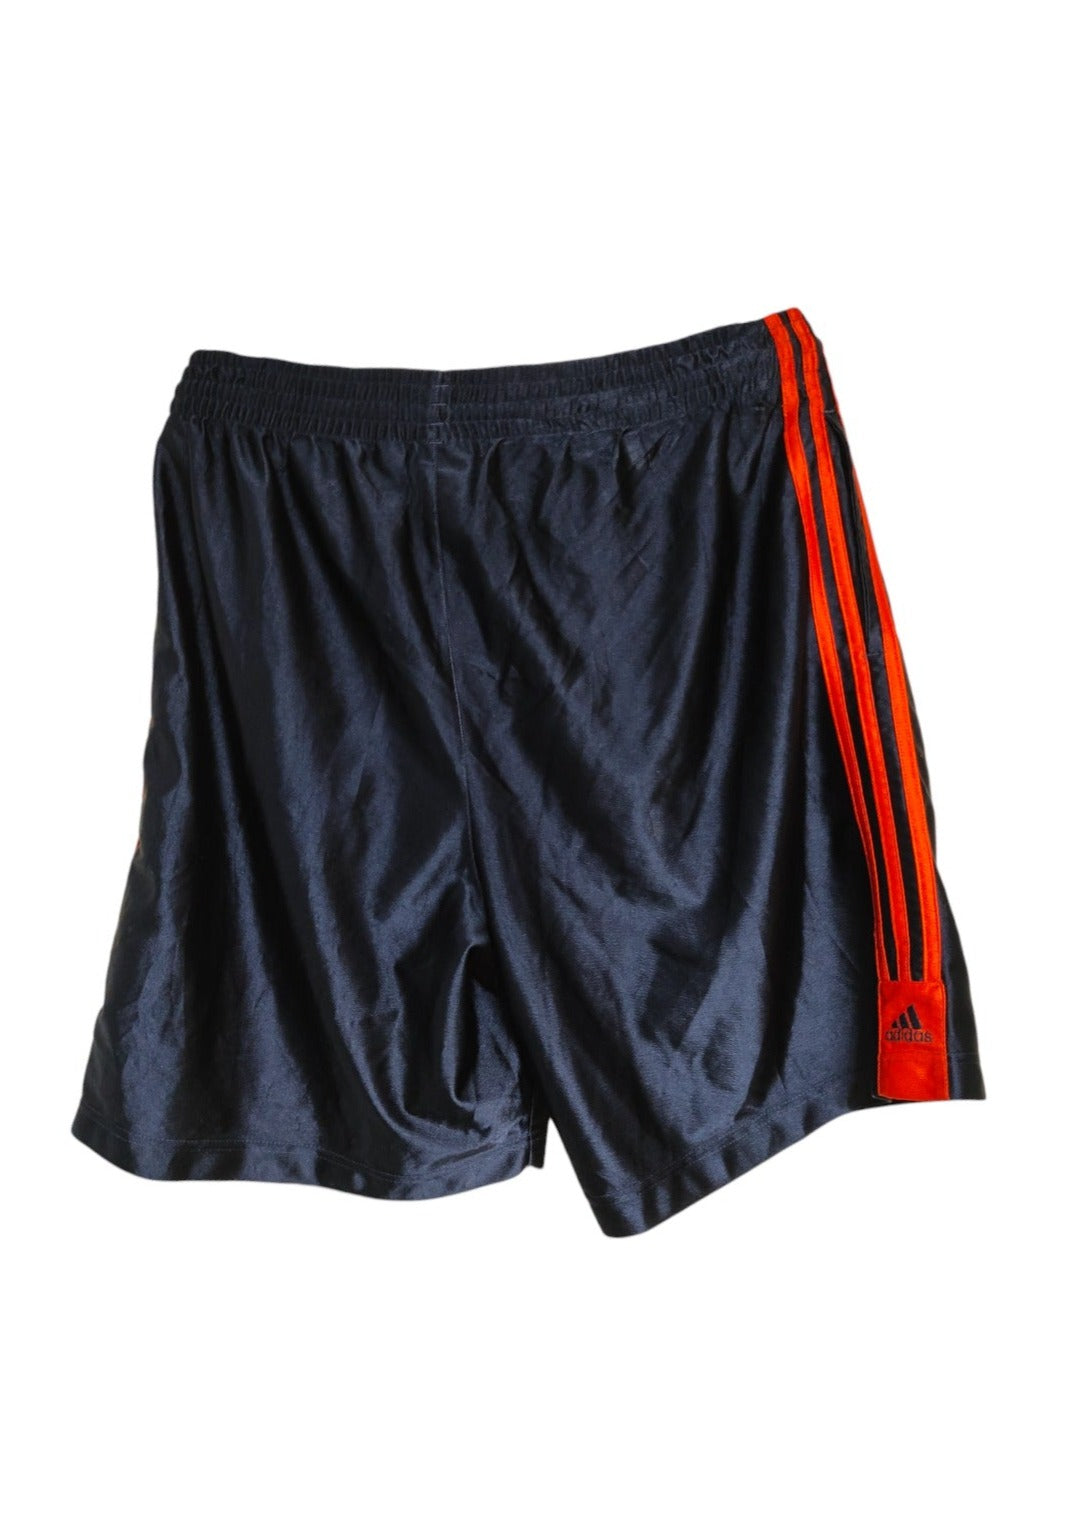 Ανδρικό, Γυαλιστερό Basketball shorts ADIDAS σε Σκούρο Μπλε χρώμα (Large)